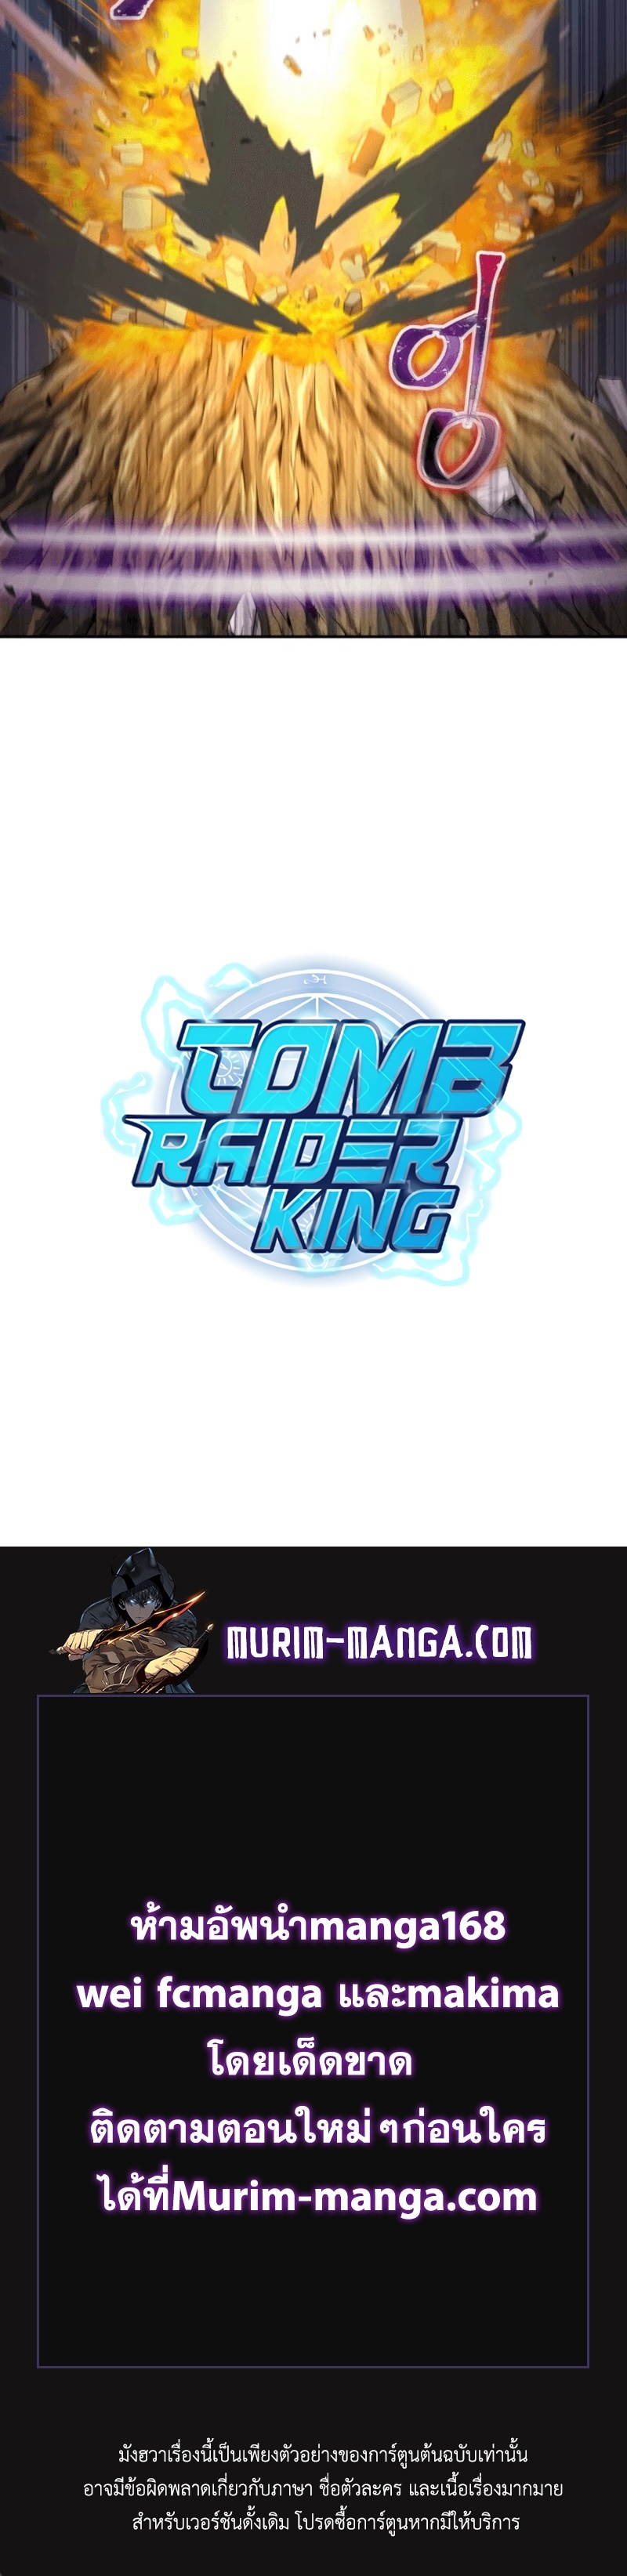 Tomb Raider King ราชันย์จอมโจรปล้นสุสาน ตอนที่ 95